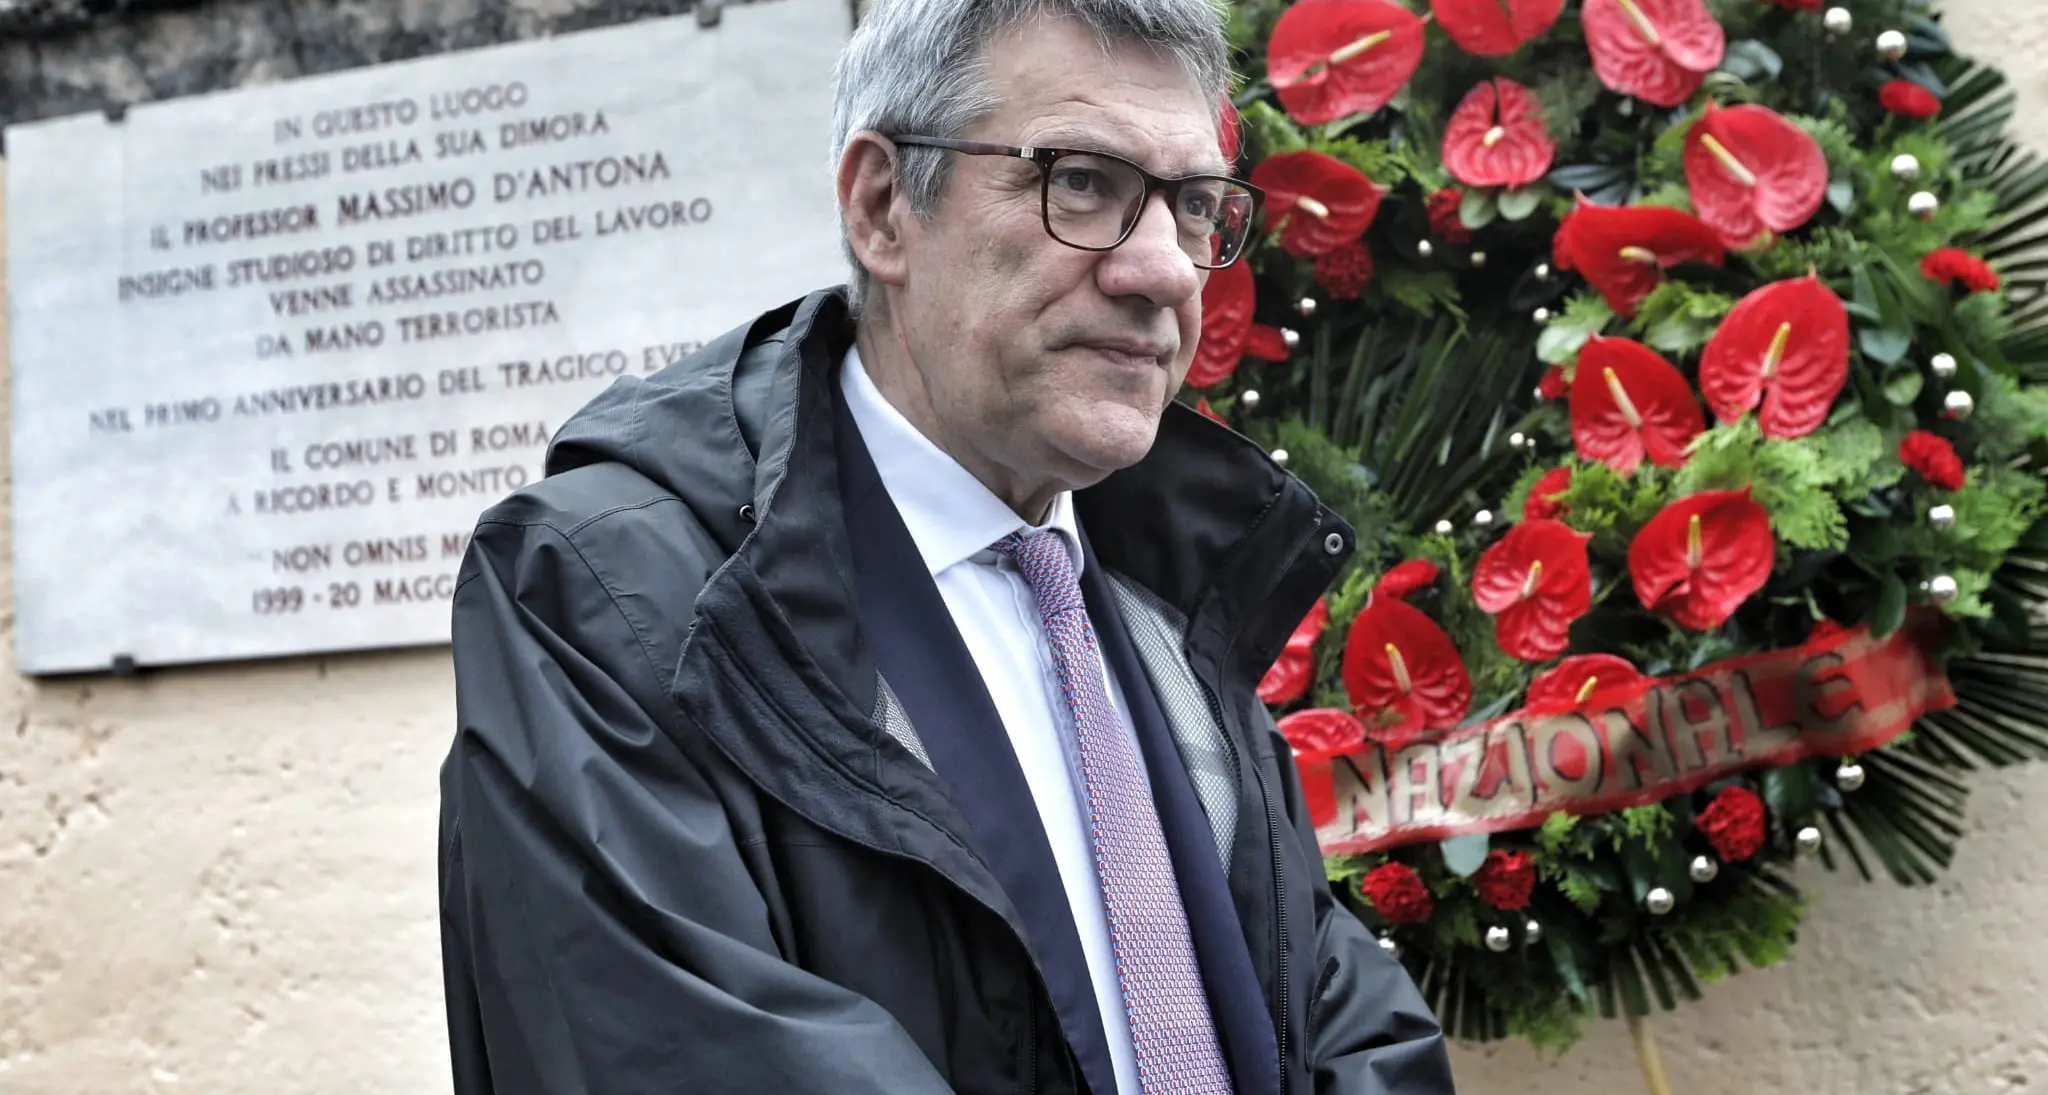 Commemorazione di Massimo D’Antona